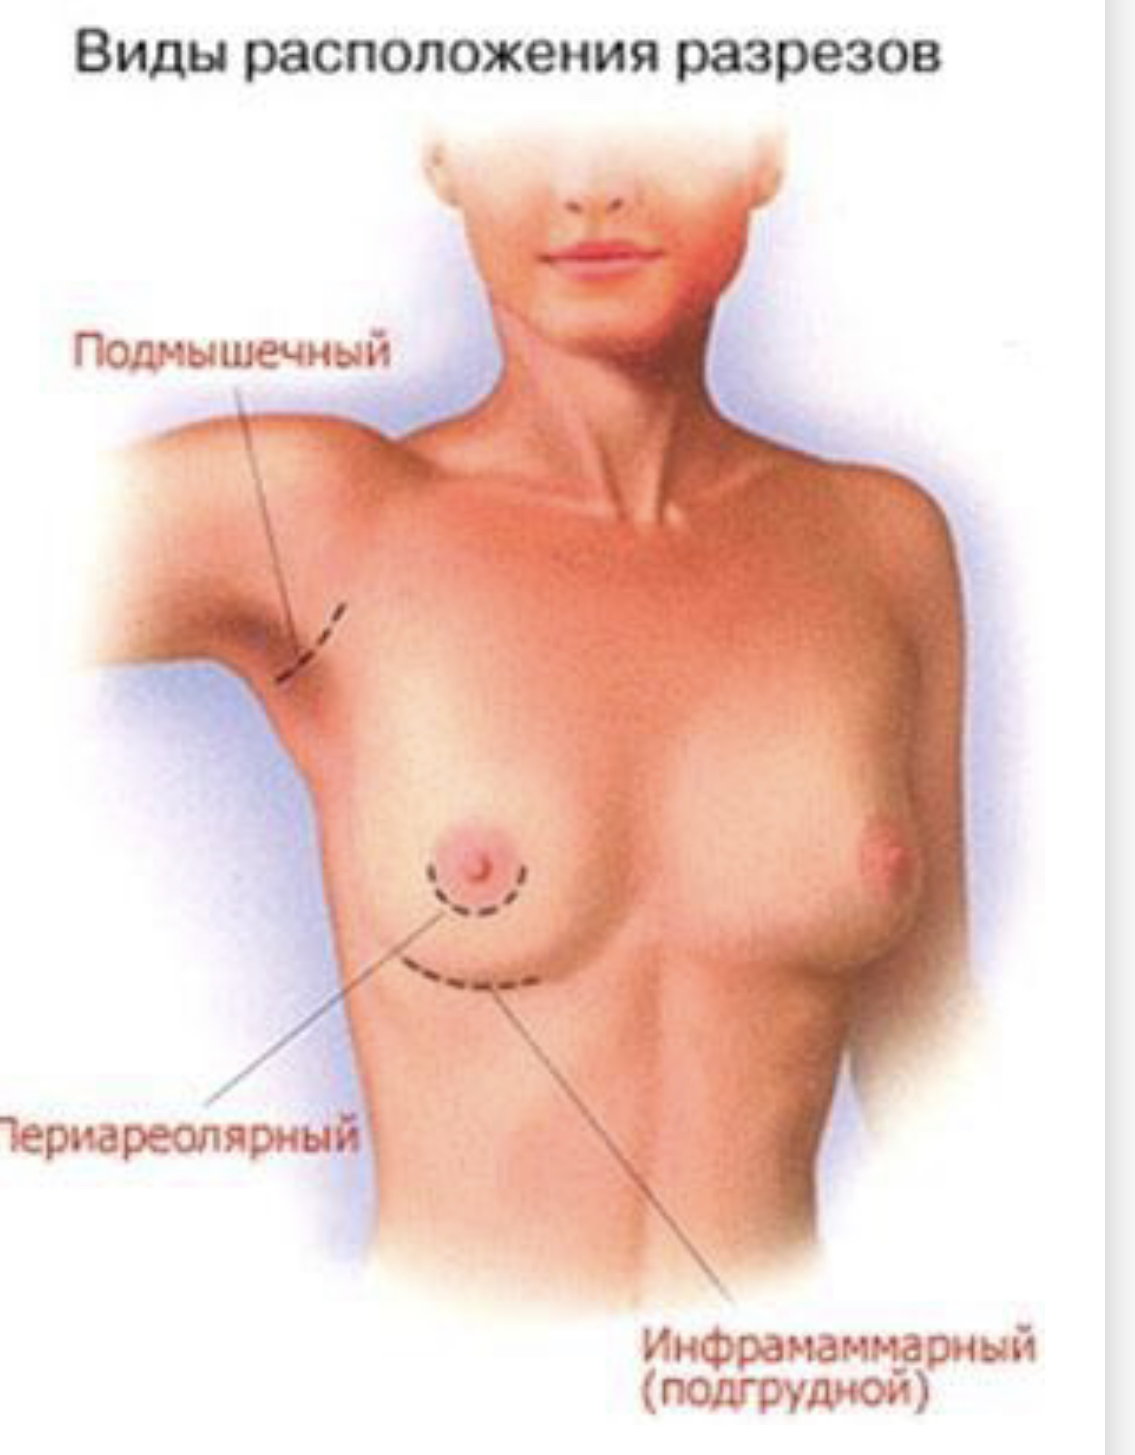 что отвечает за рост груди у женщин фото 117